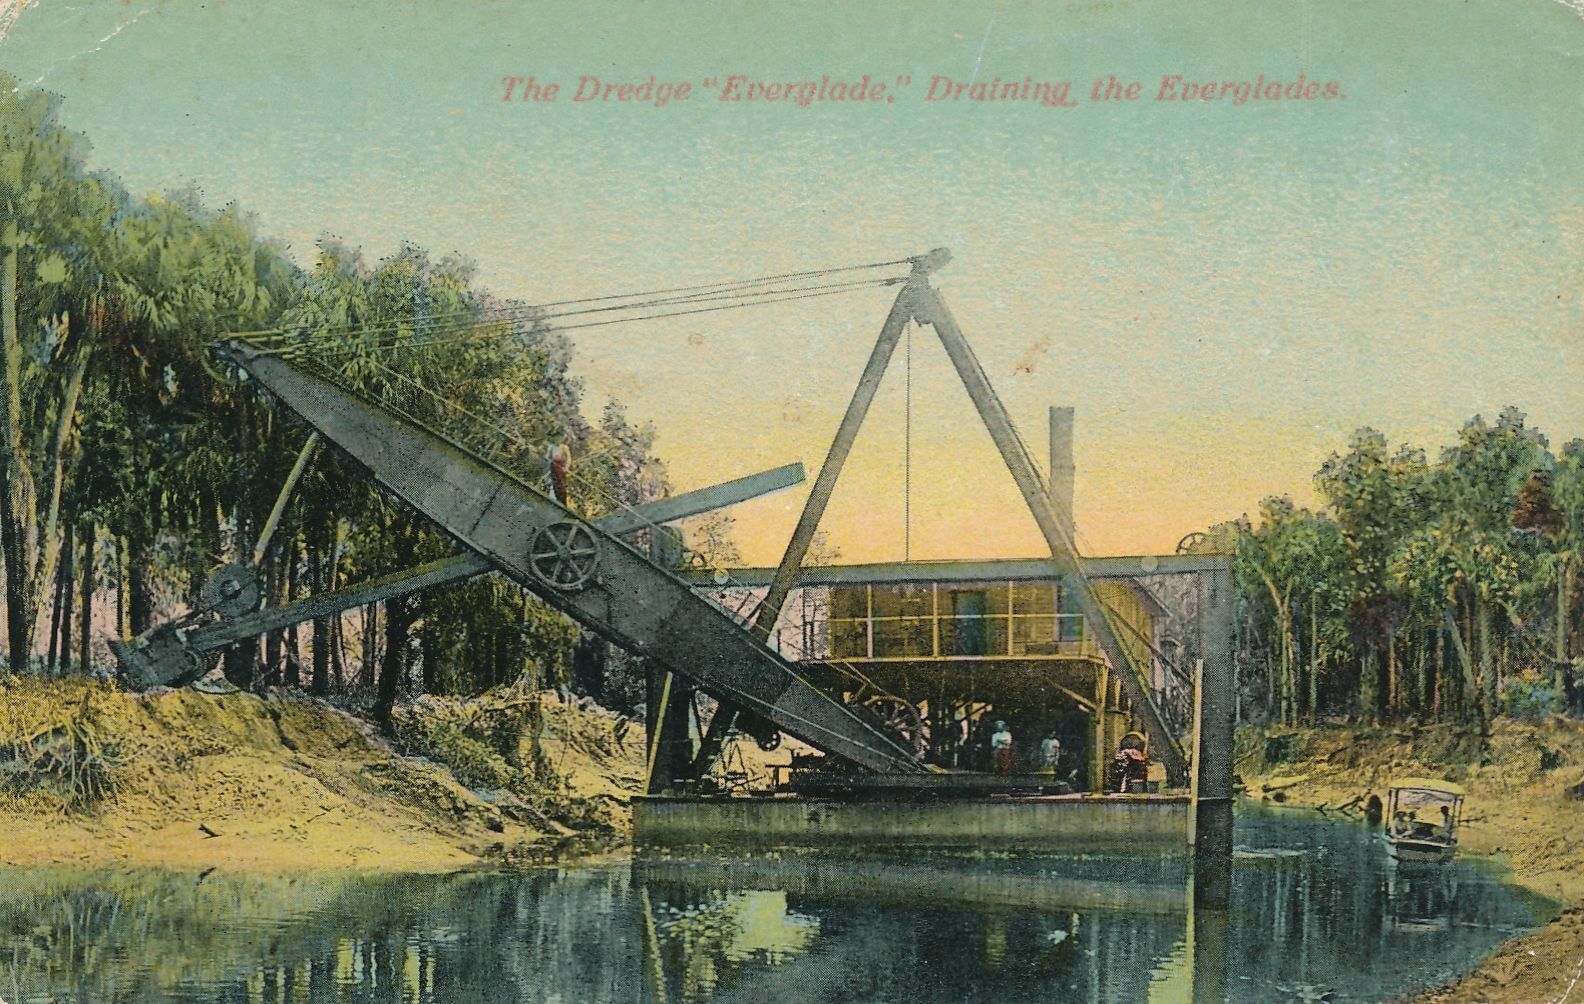 EVERGLADES FL - The Dredge Everglade Draining The Everglades Postcard